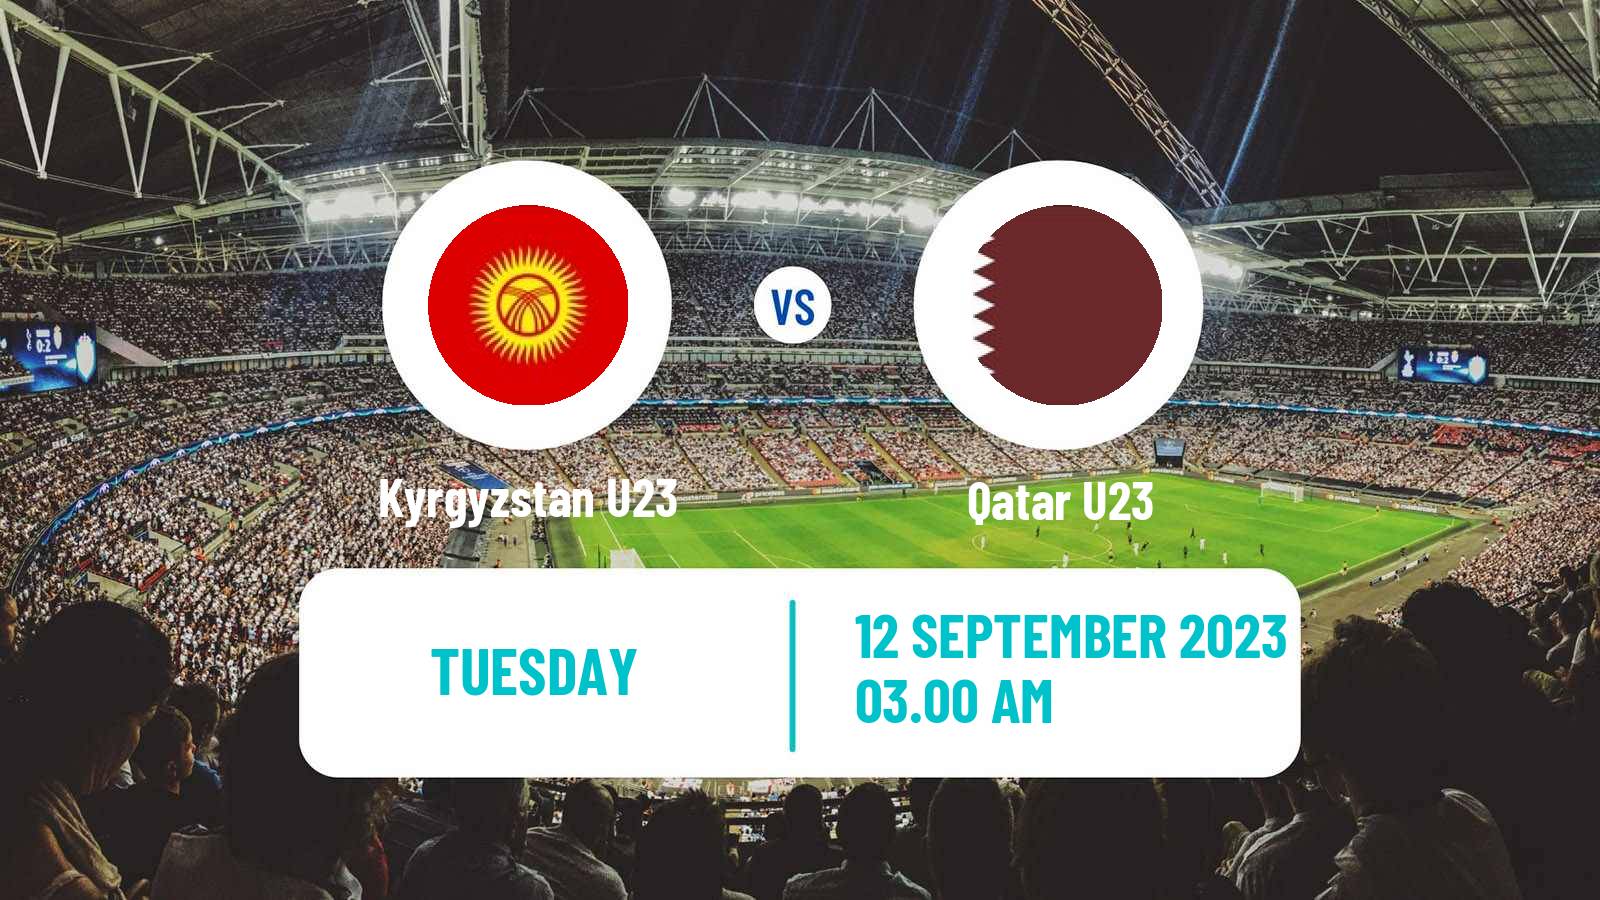 Soccer AFC Asian Cup U23 Kyrgyzstan U23 - Qatar U23